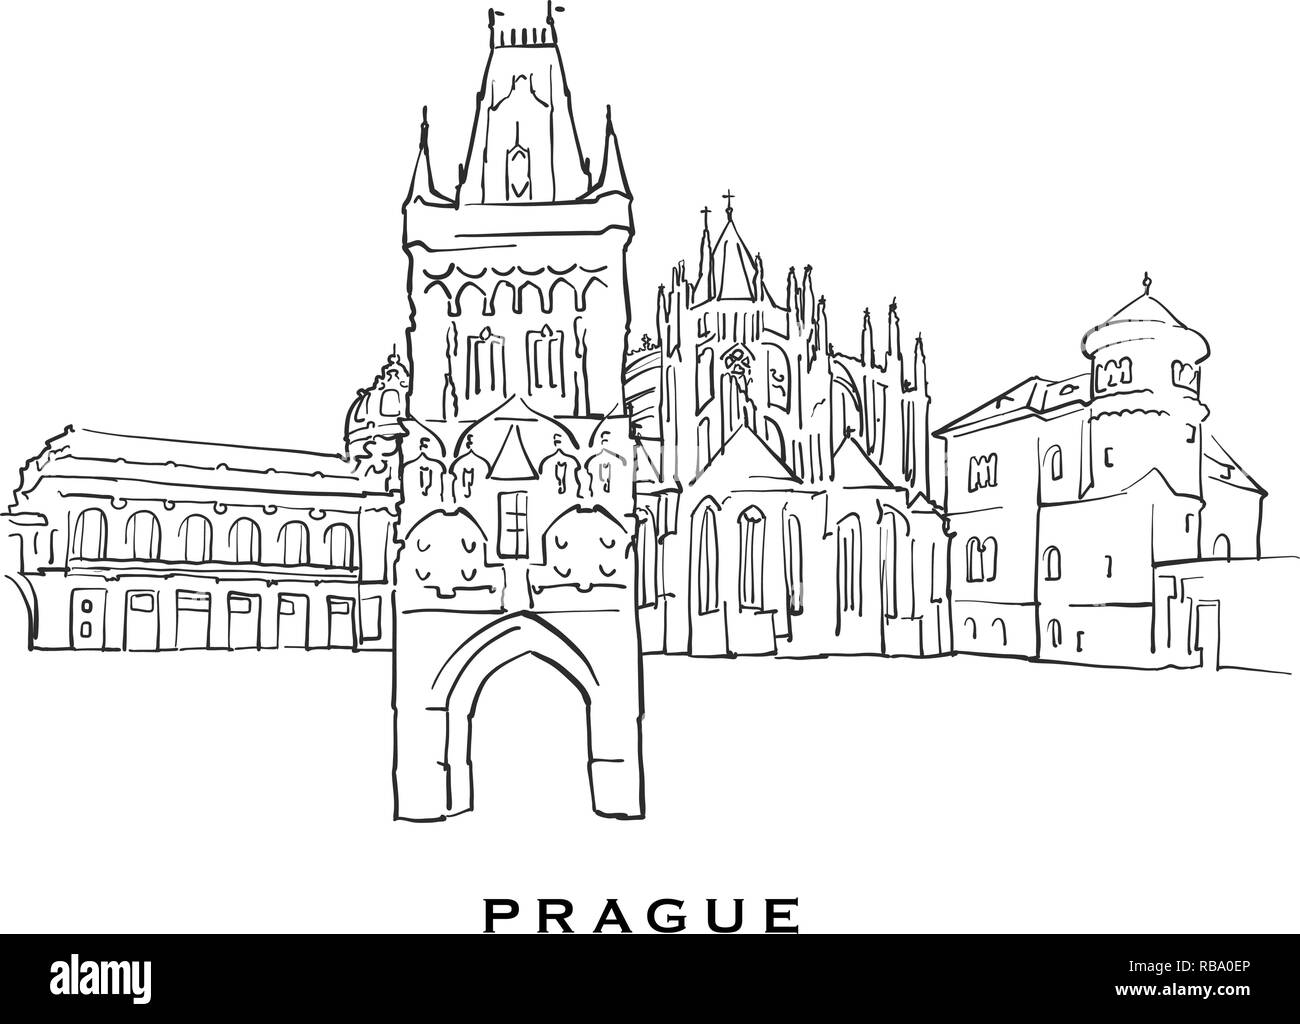 Berühmte Architektur in Prag in der Tschechischen Republik. Vektor Skizze auf weißem Hintergrund getrennt aufgeführt. Architektur Zeichnungen von allen europäischen Hauptstädten. Stock Vektor